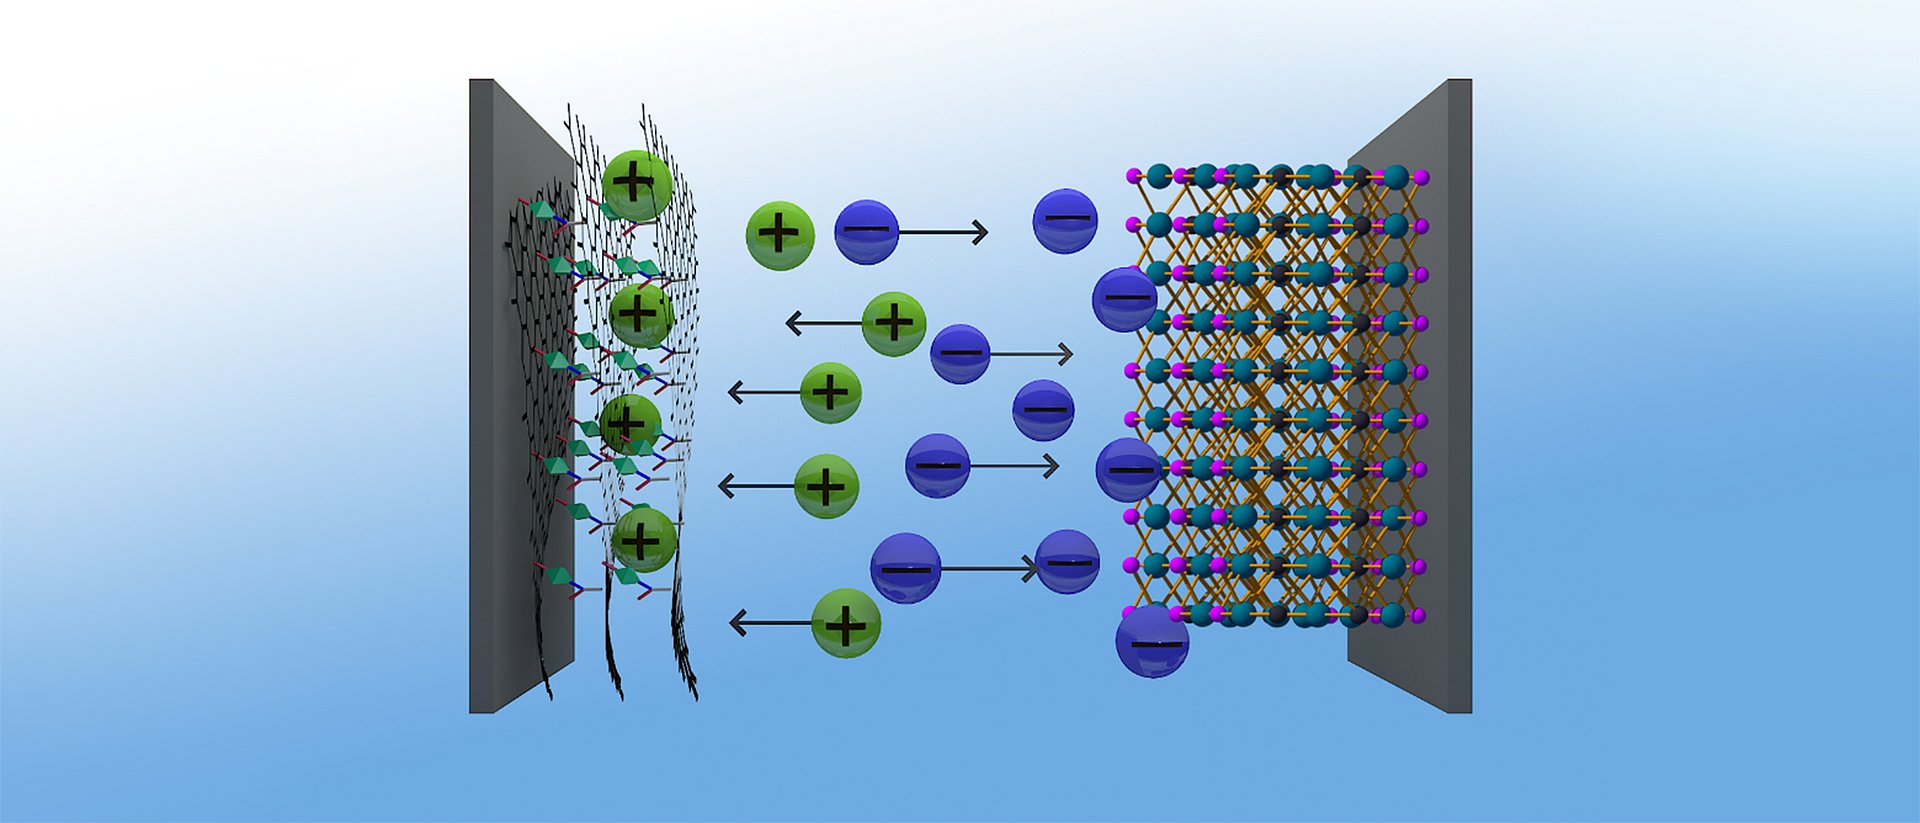 Graphen-Hybride (links) aus metallorganischen Netzwerken (metal organic frameworks, MOF) und Graphensäure ergeben eine hervorragende positive Elektrode für Superkondensatoren, die damit eine ähnliche Energiedichte erreichen, wie Nickel-Metallhydrid-Akkus.